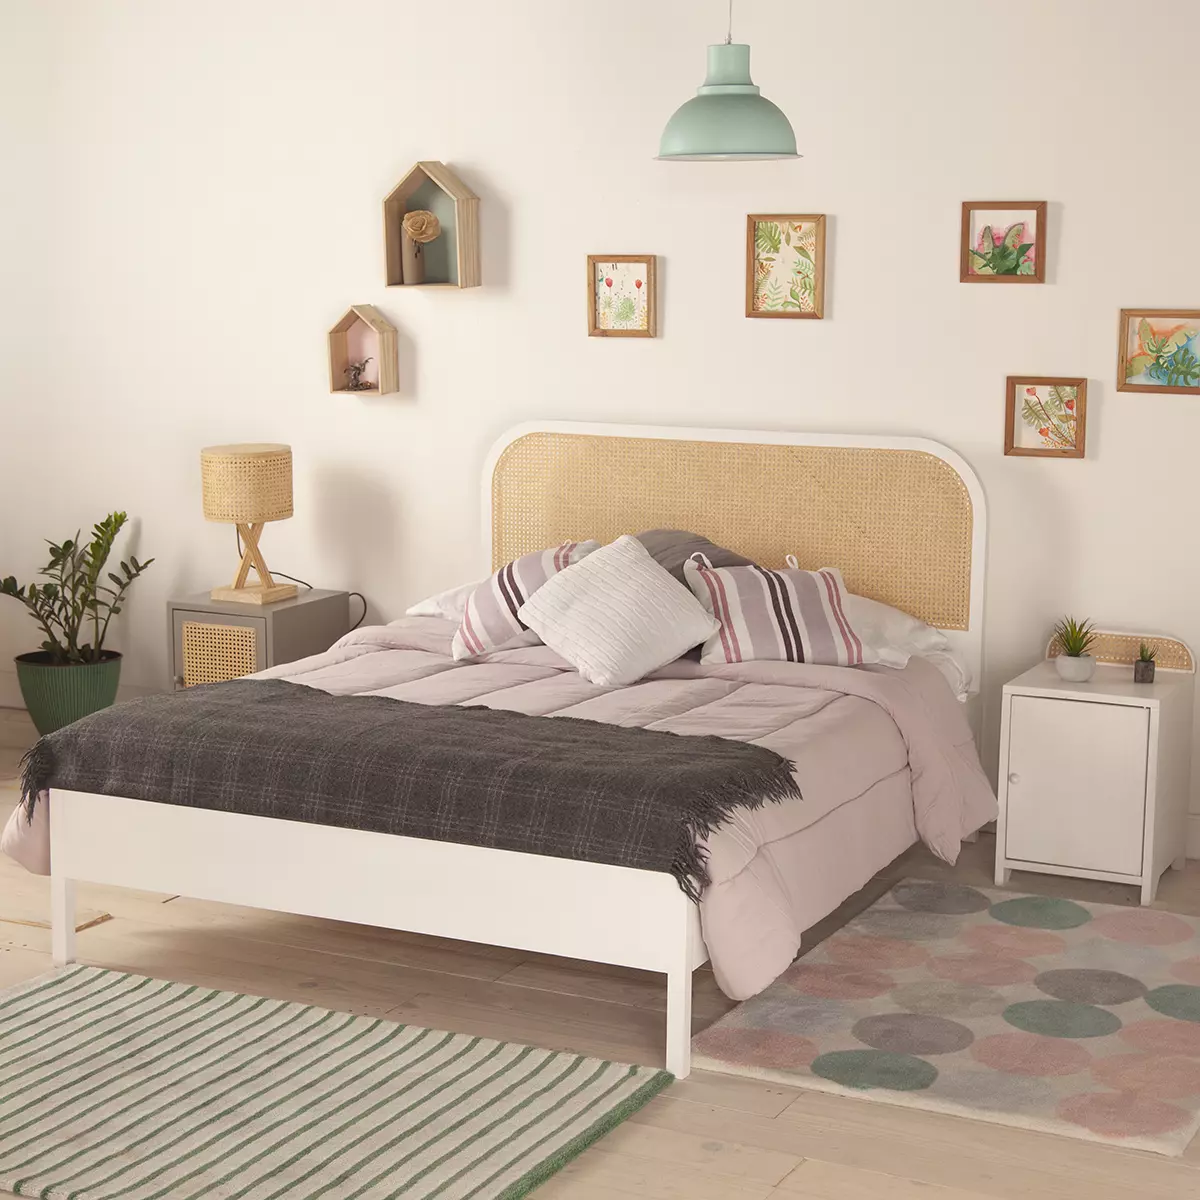 Cama de casal  branca, uma cama com cabeceira de palha natural, em um quarto decorado com tapetes e mesas de cabeceiras.